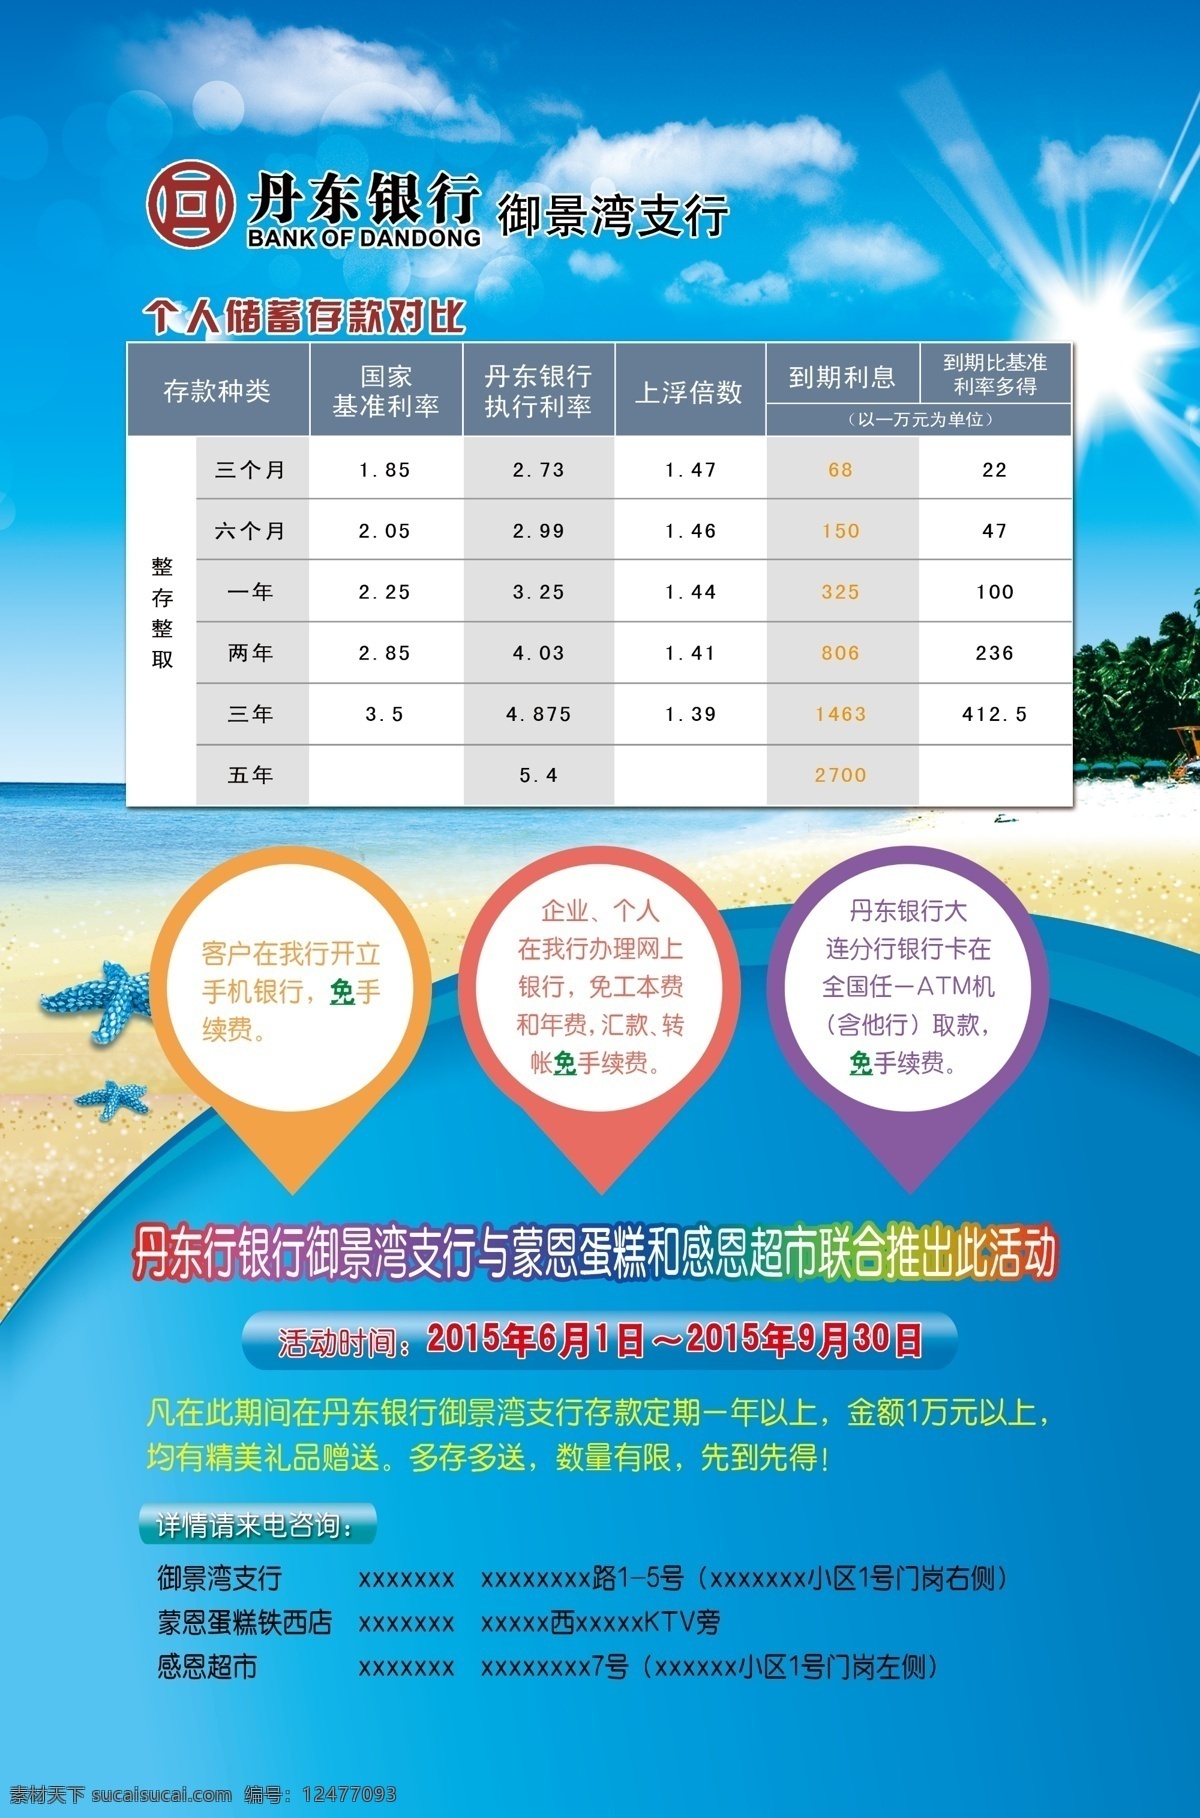 丹东 银行 利率表 丹东银行 银行活动板 银行海报 海景 海星 沙滩 分层